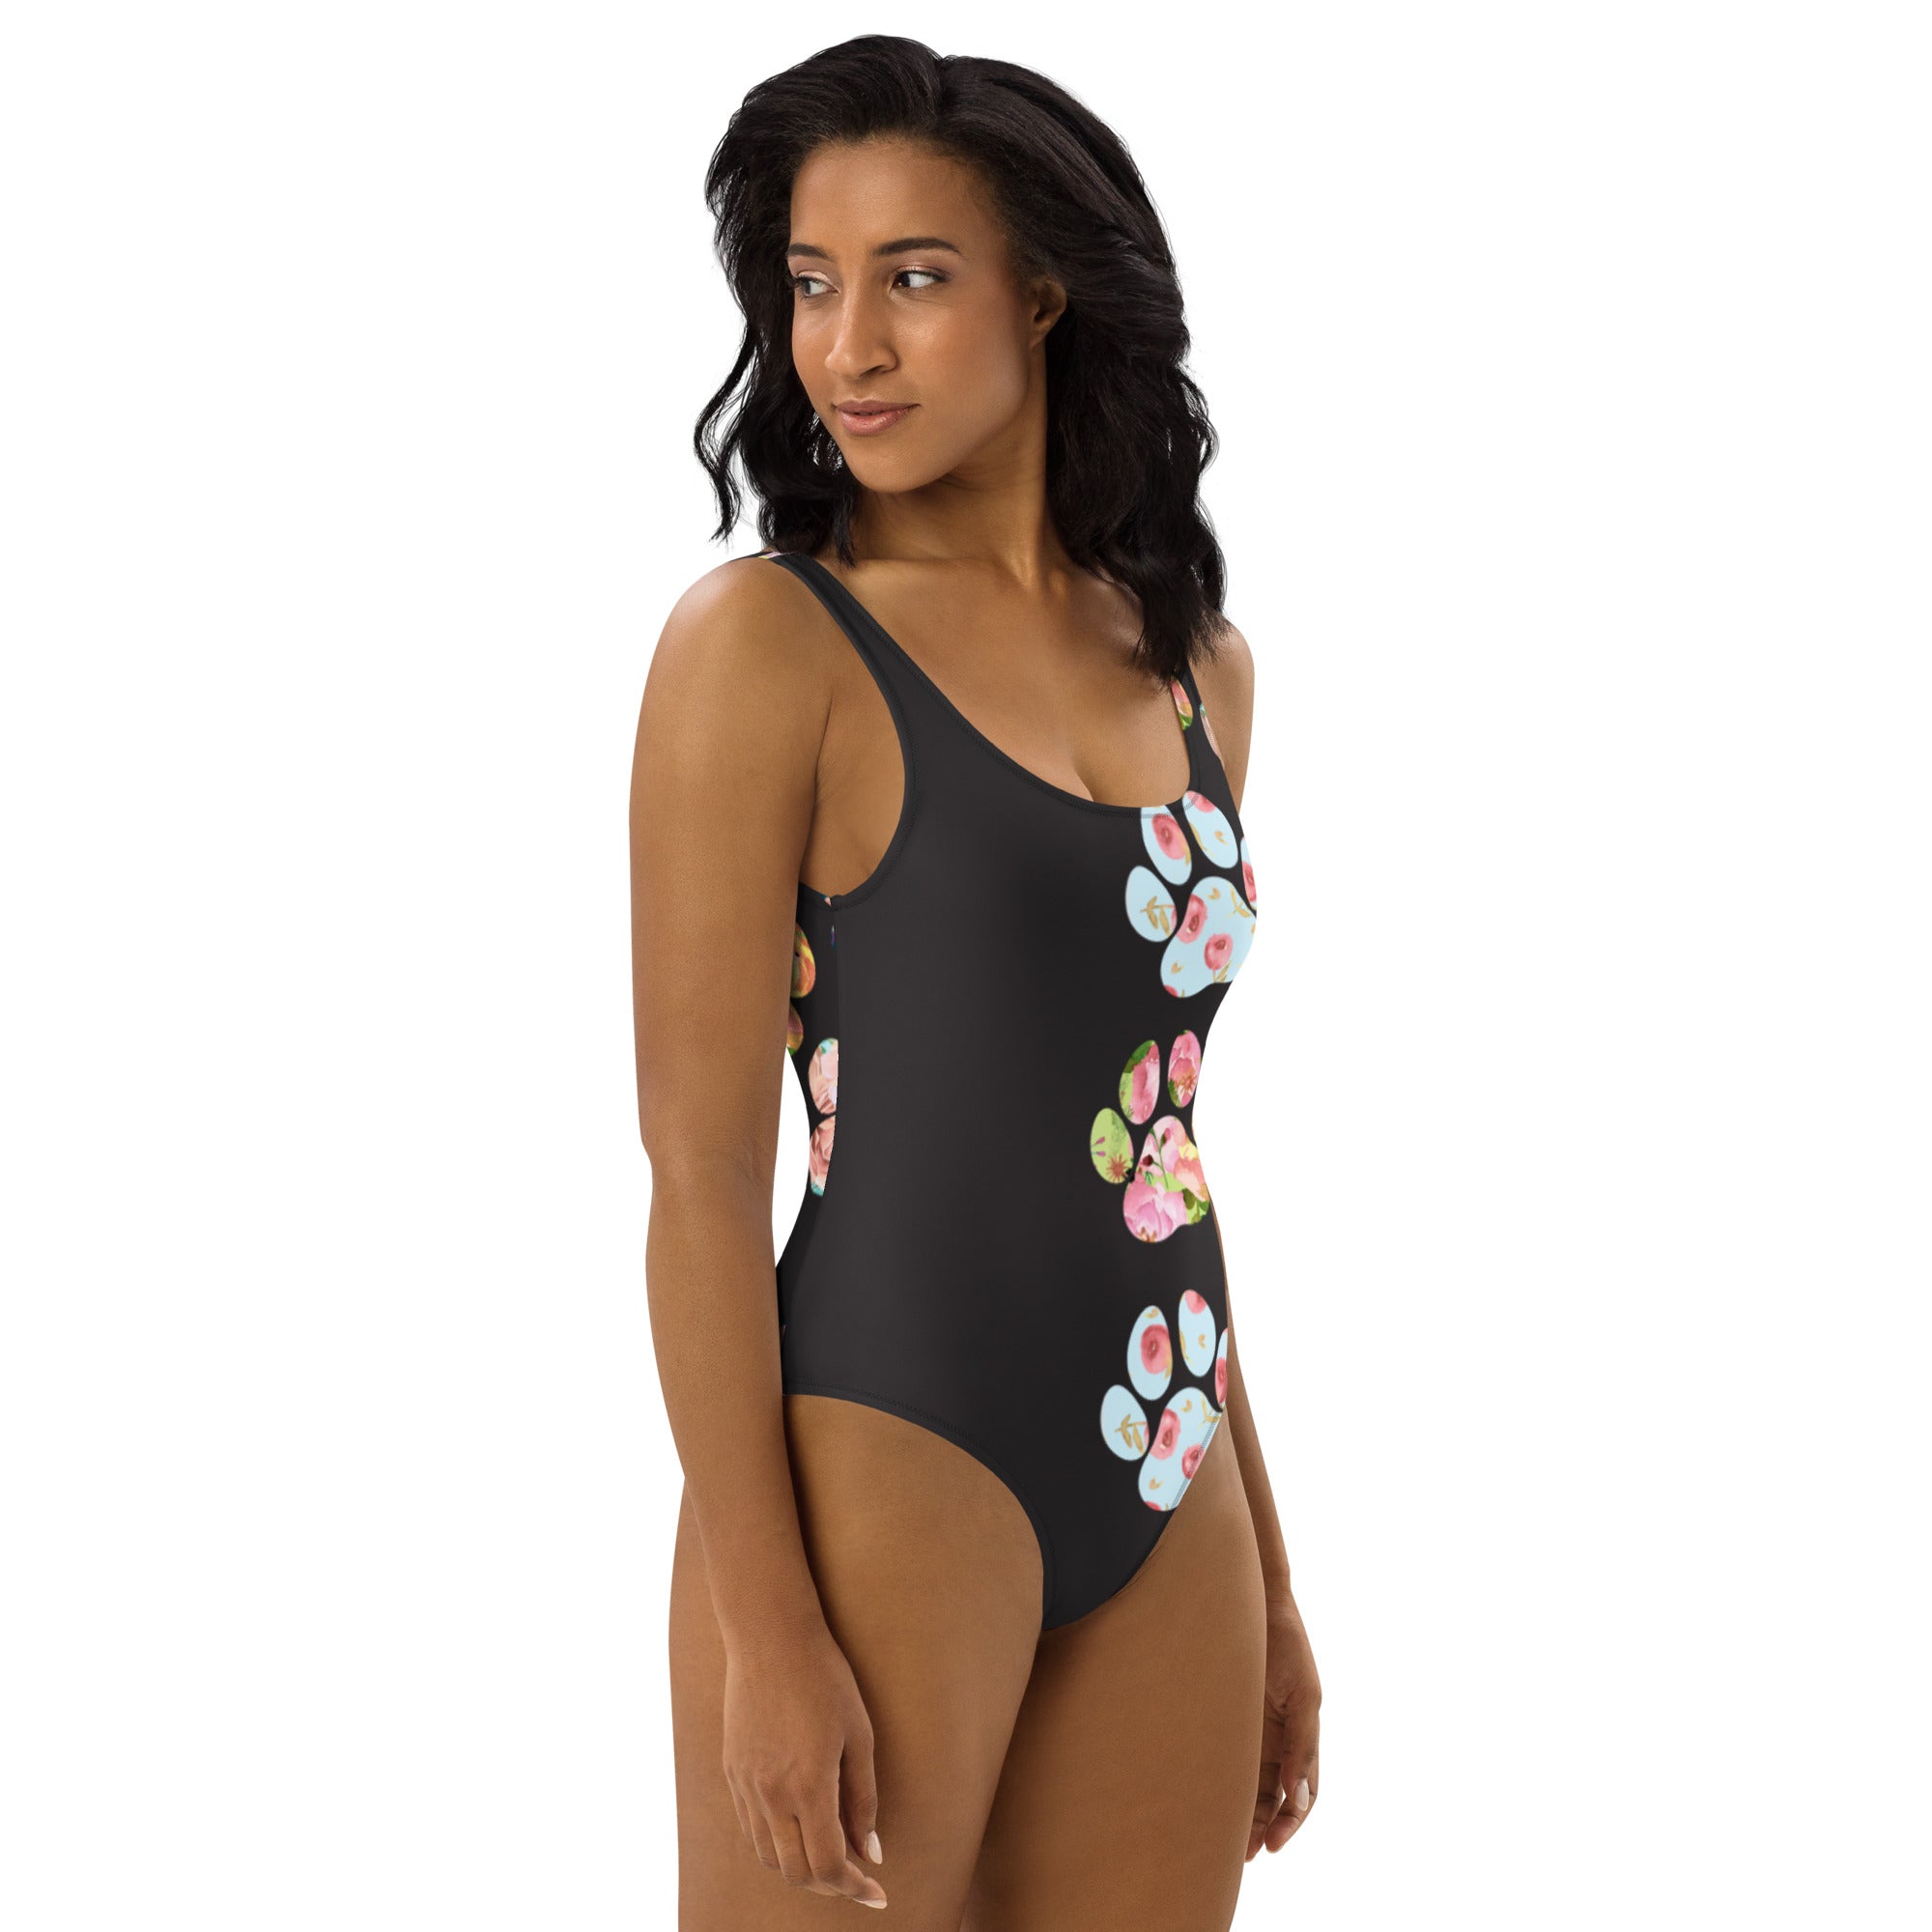 The Brea Women's One-Piece Swimsuit